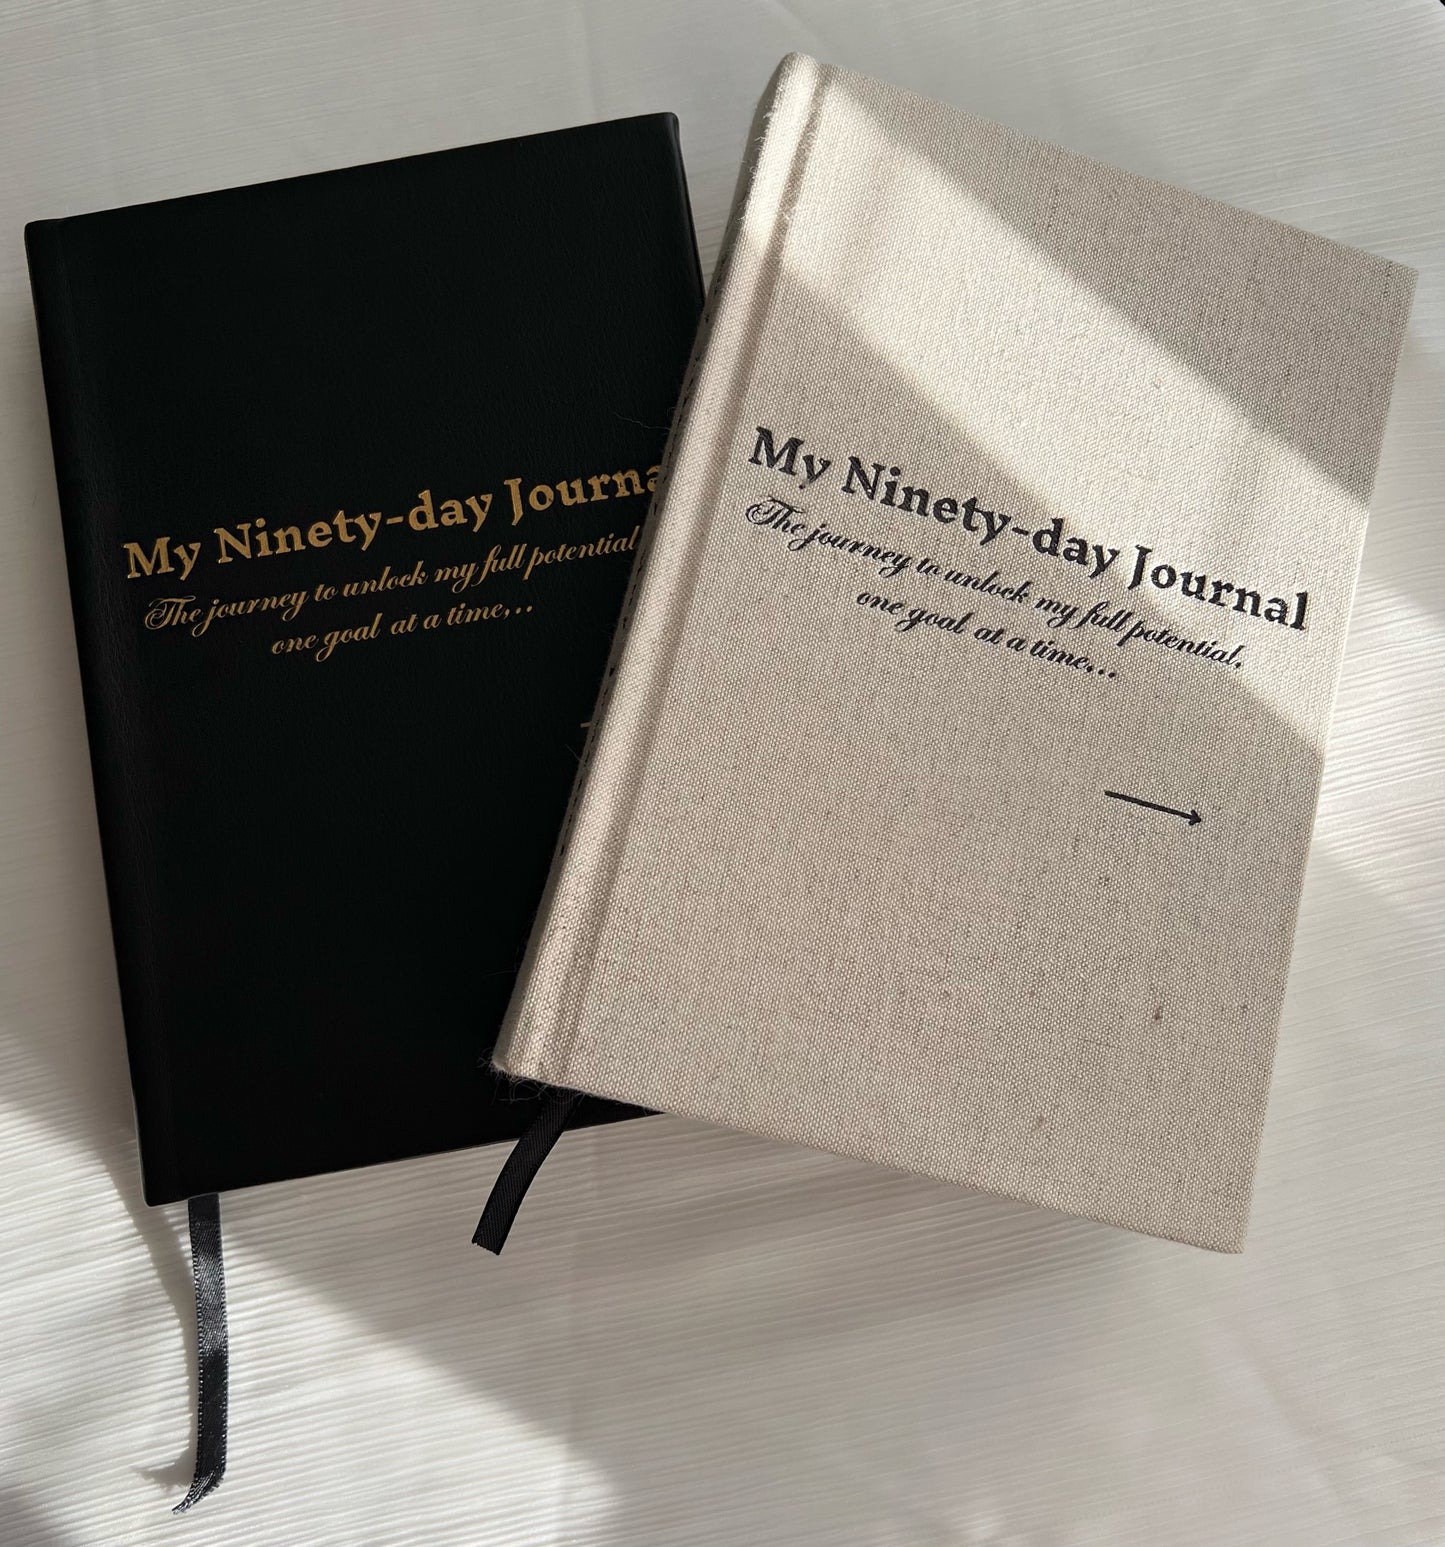 My Ninety-day Journal